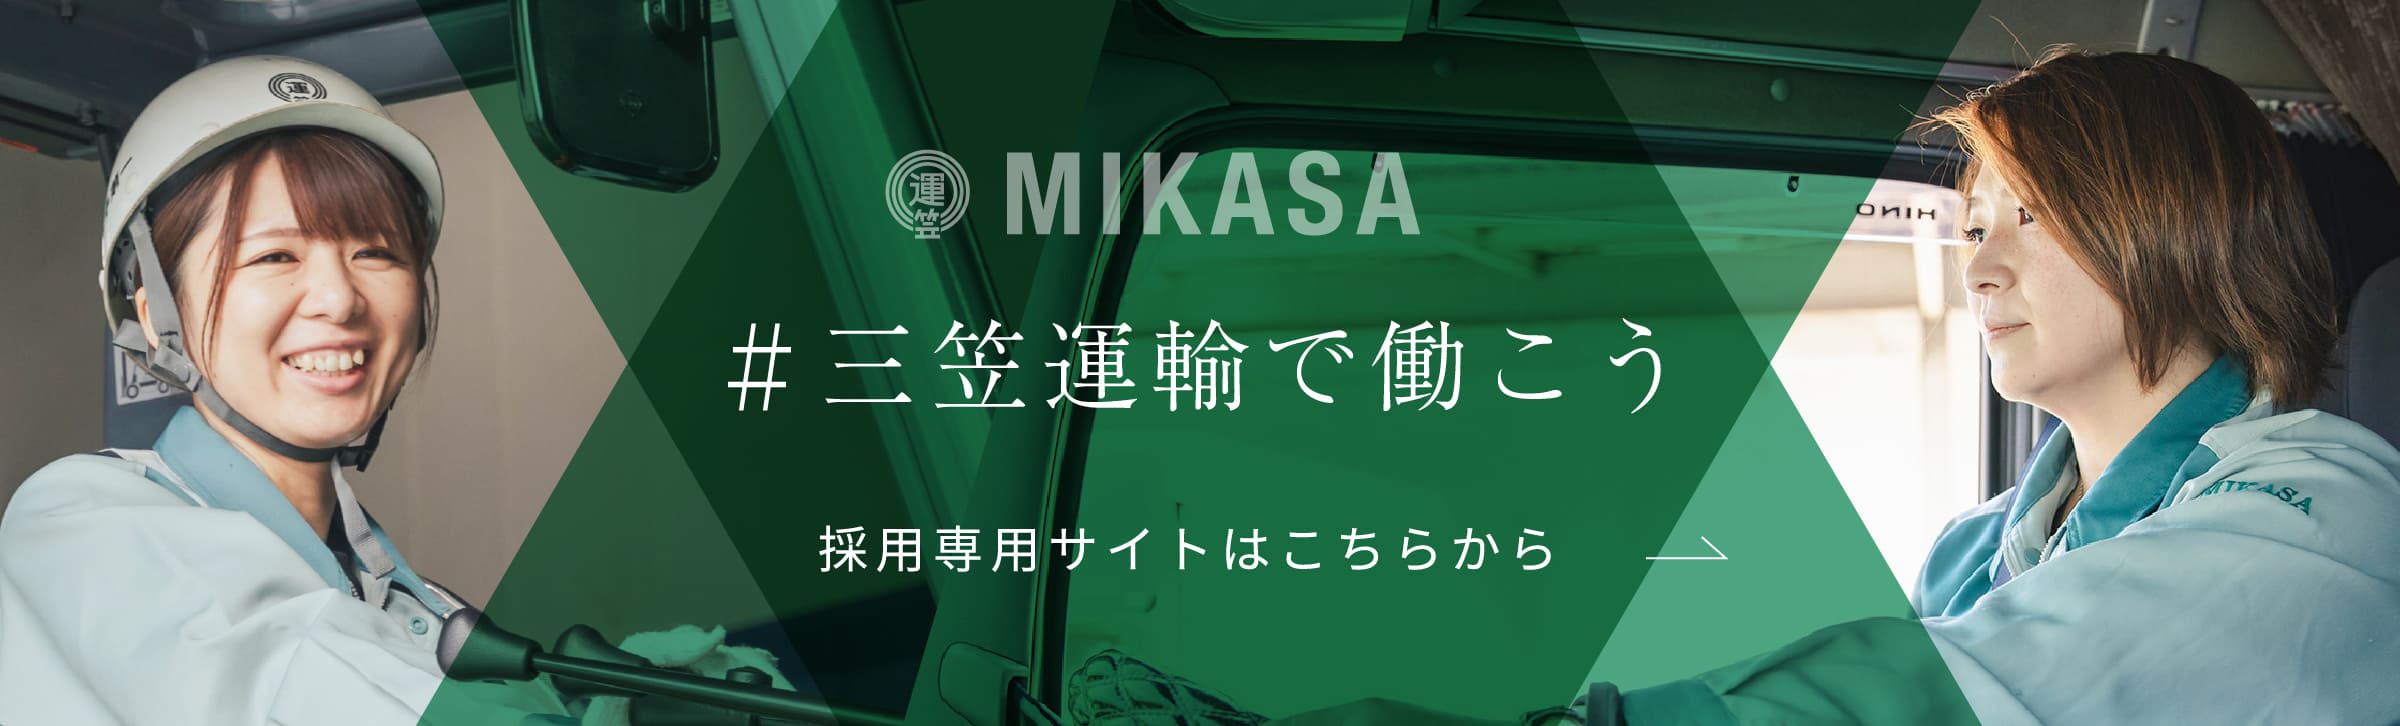 MIKASA #三笠運輸で働こう 採用専用サイトはこちらから